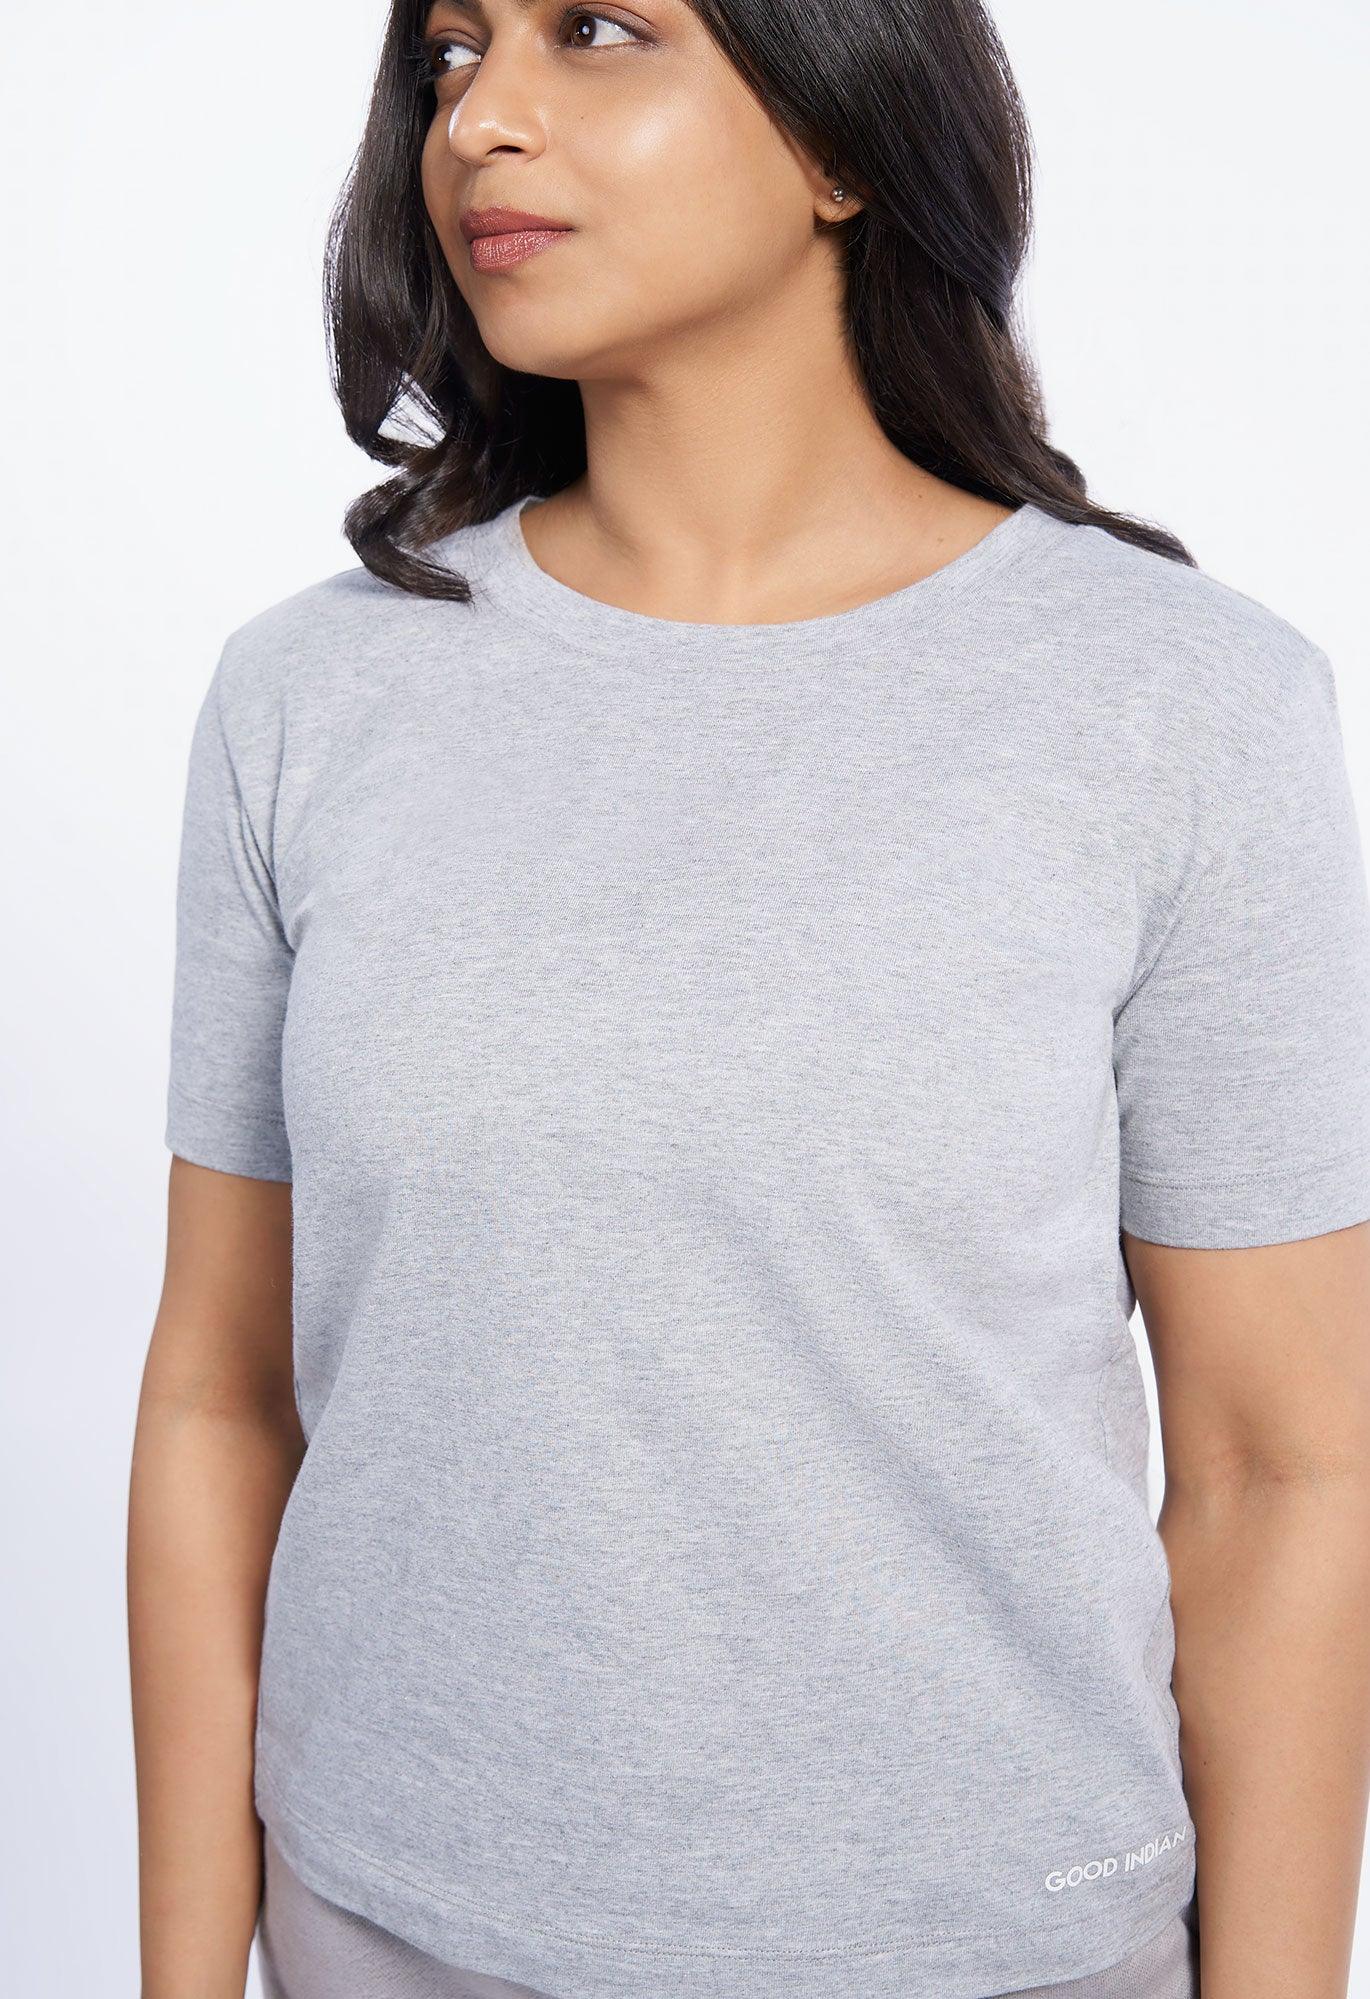 Women’s Essential T-Shirt - Good Indian